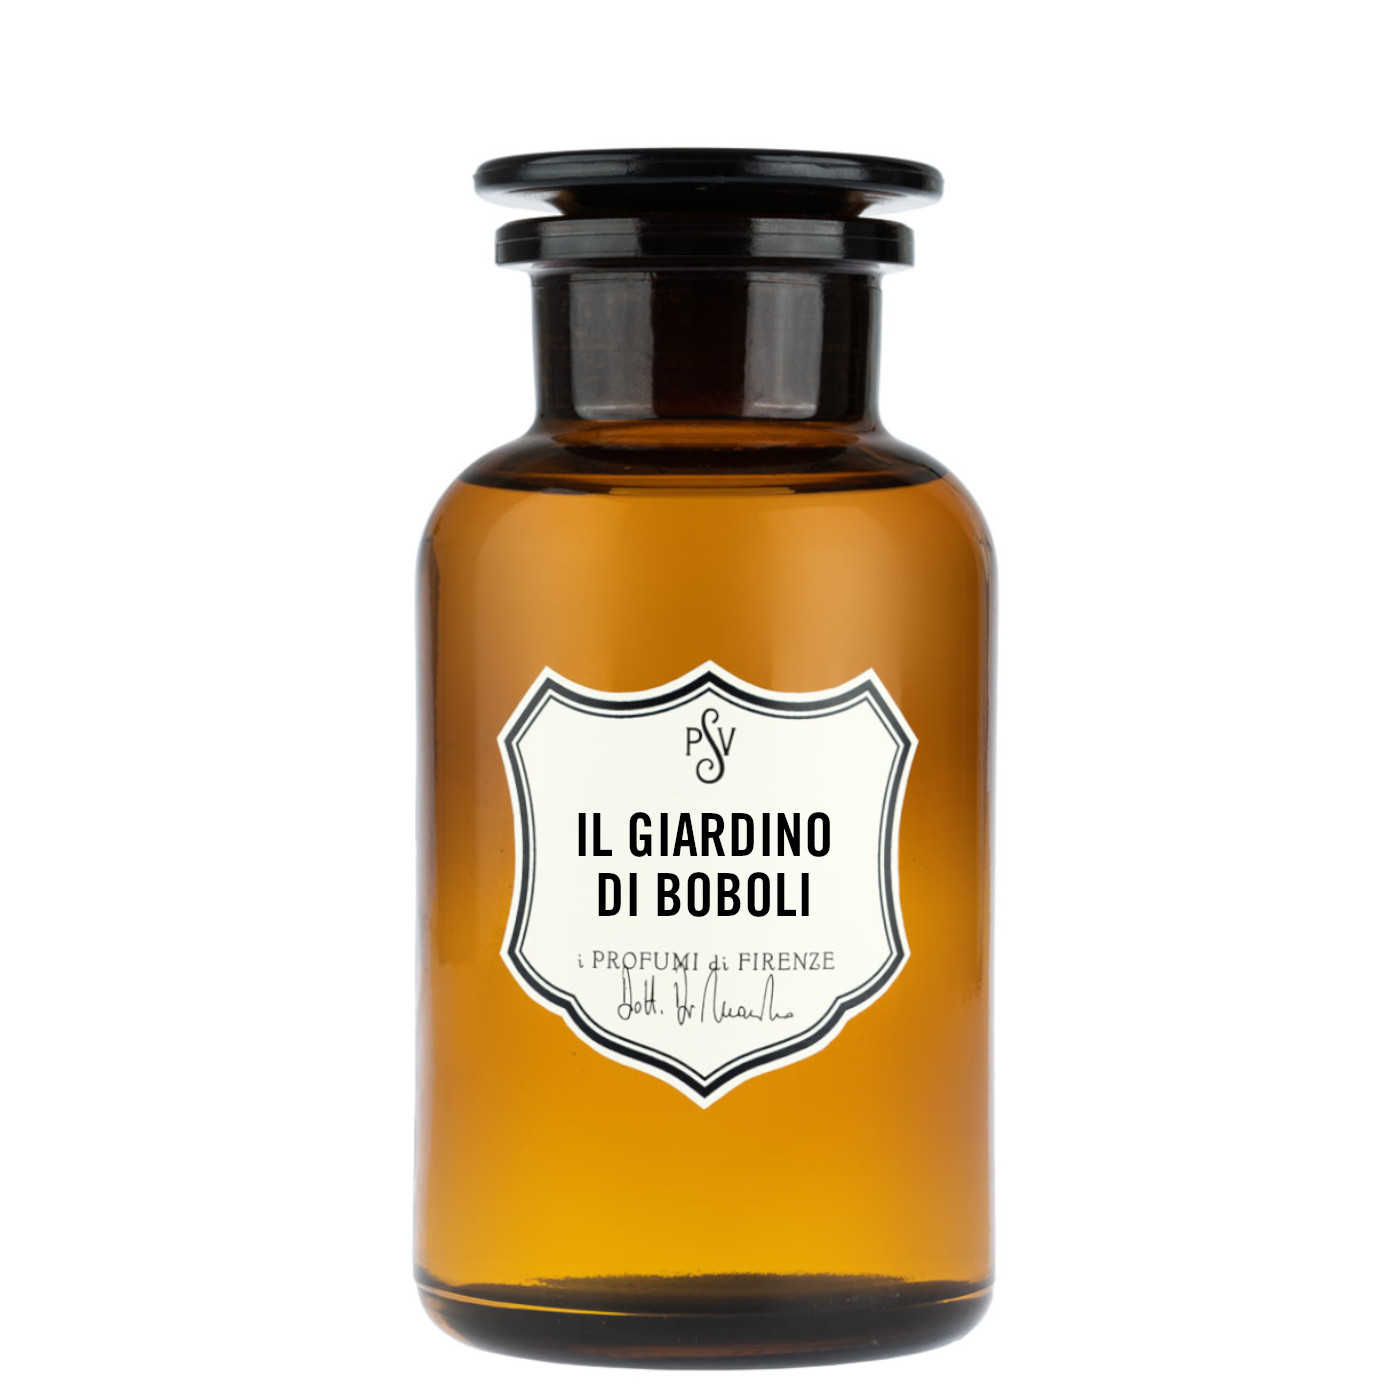 IL GIARDINO DI BOBOLI - Home Fragrance-4506